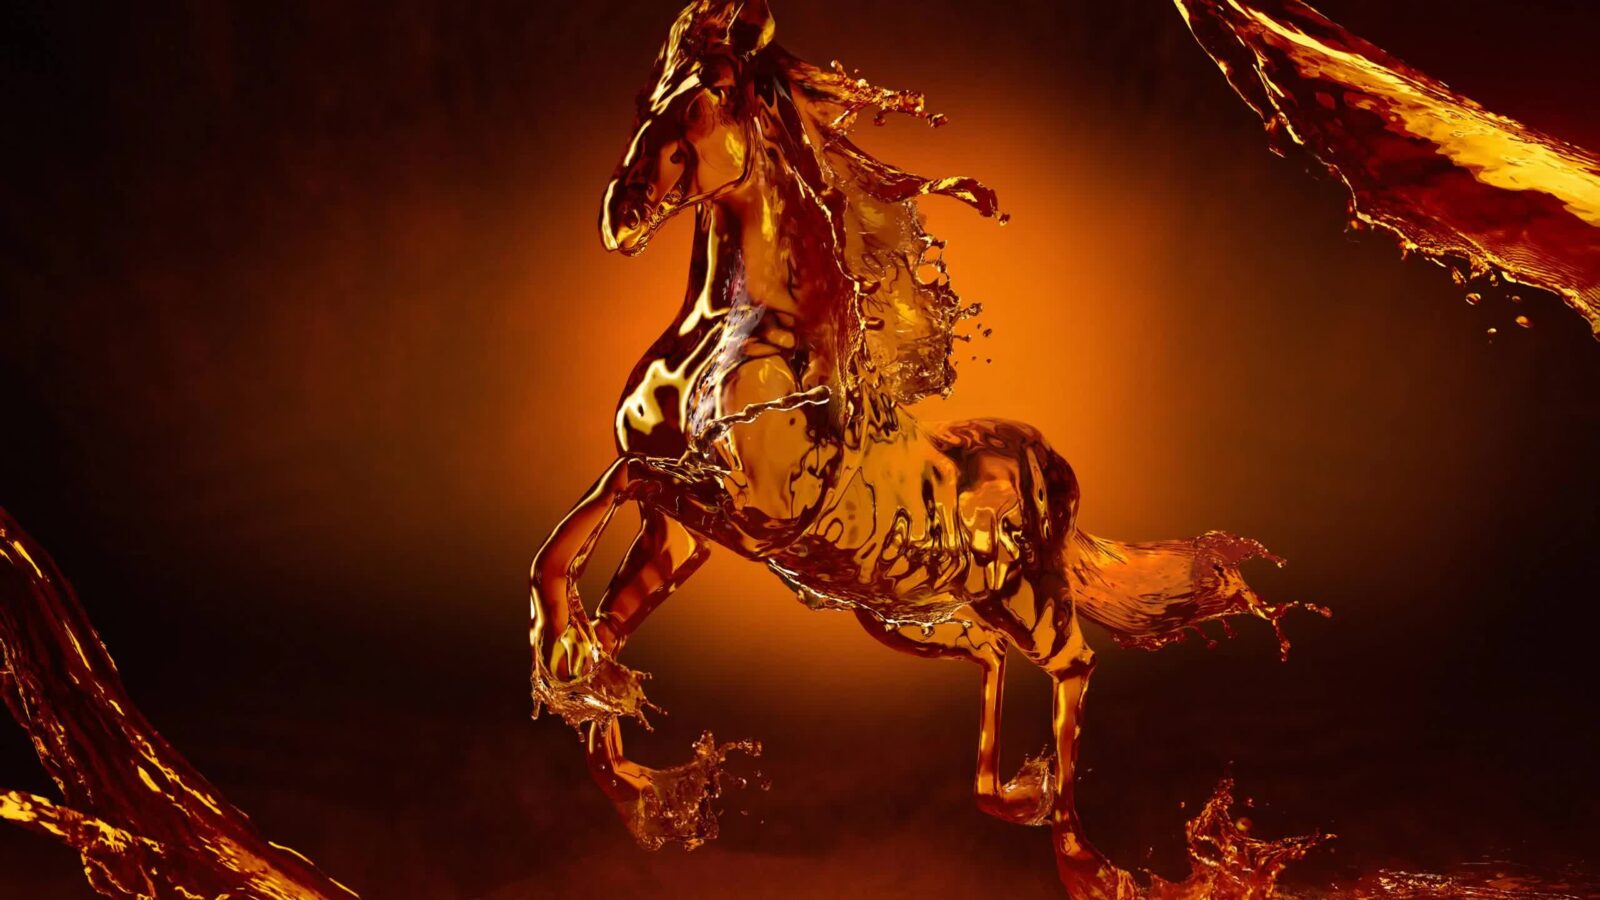 Liquid Horse 2K - Free Live Wallpaper